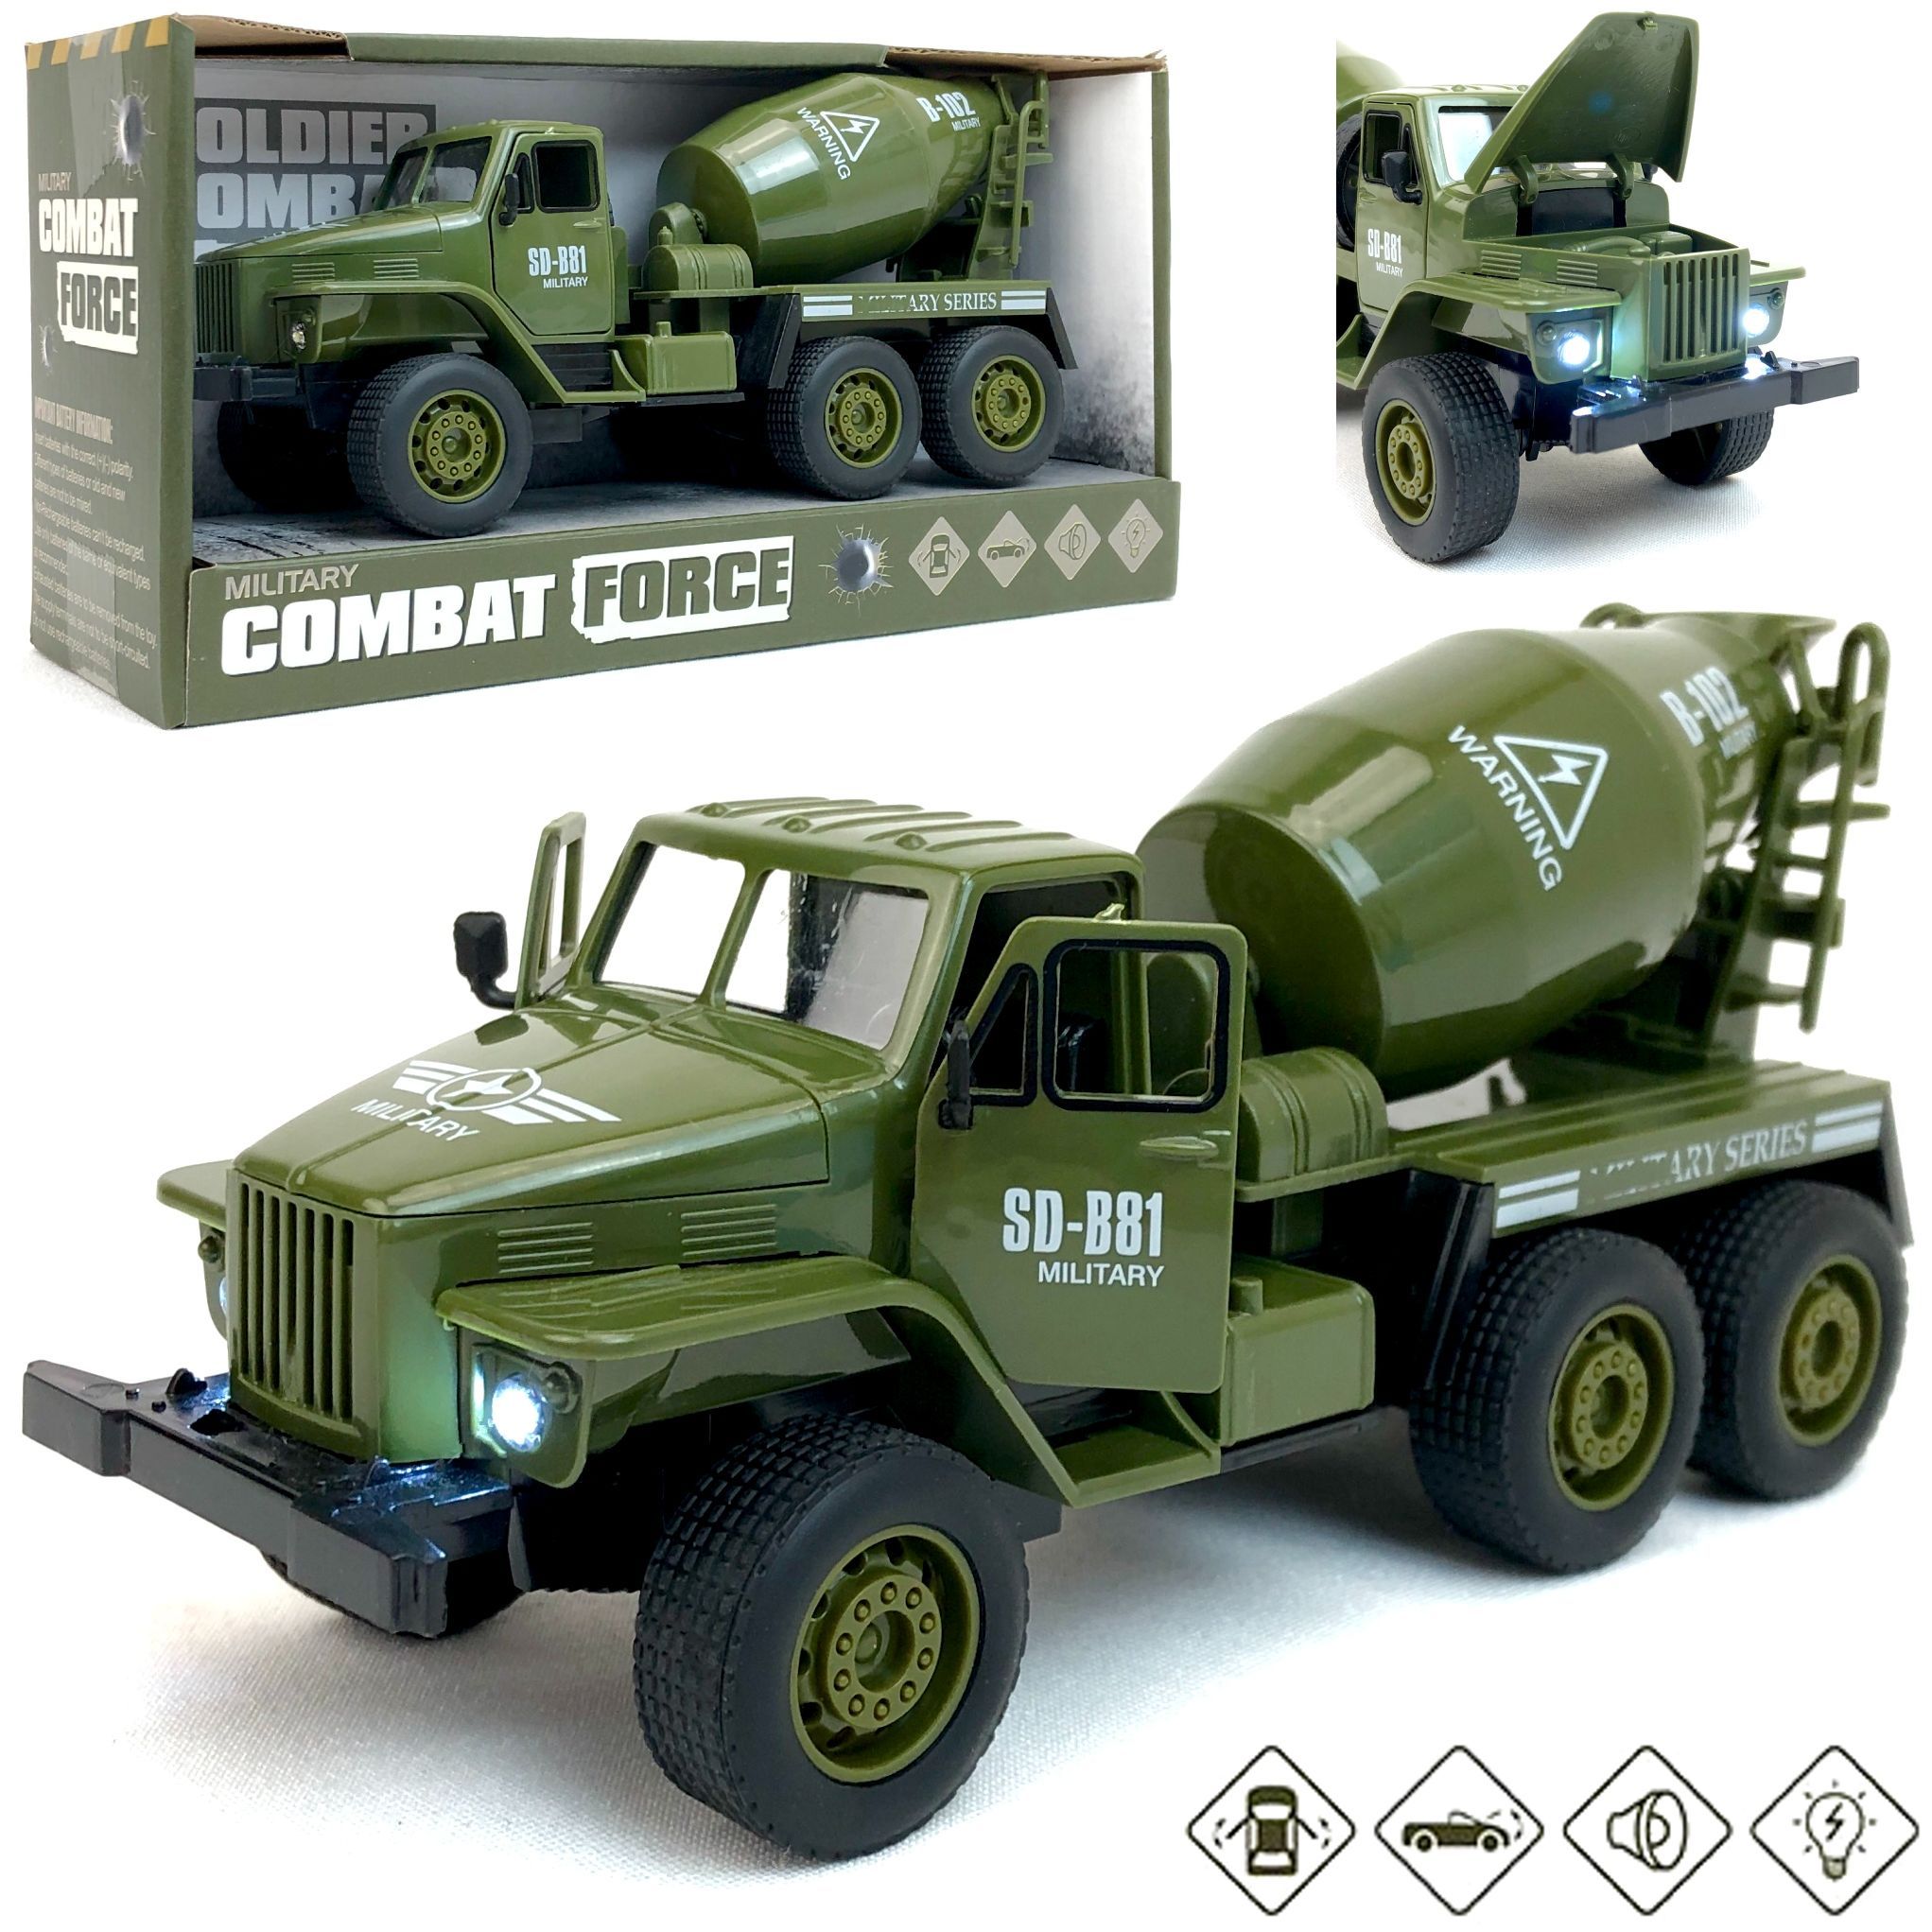 Инерционный военный грузовик PLAYSMART Combat Force, открываются двери и капот